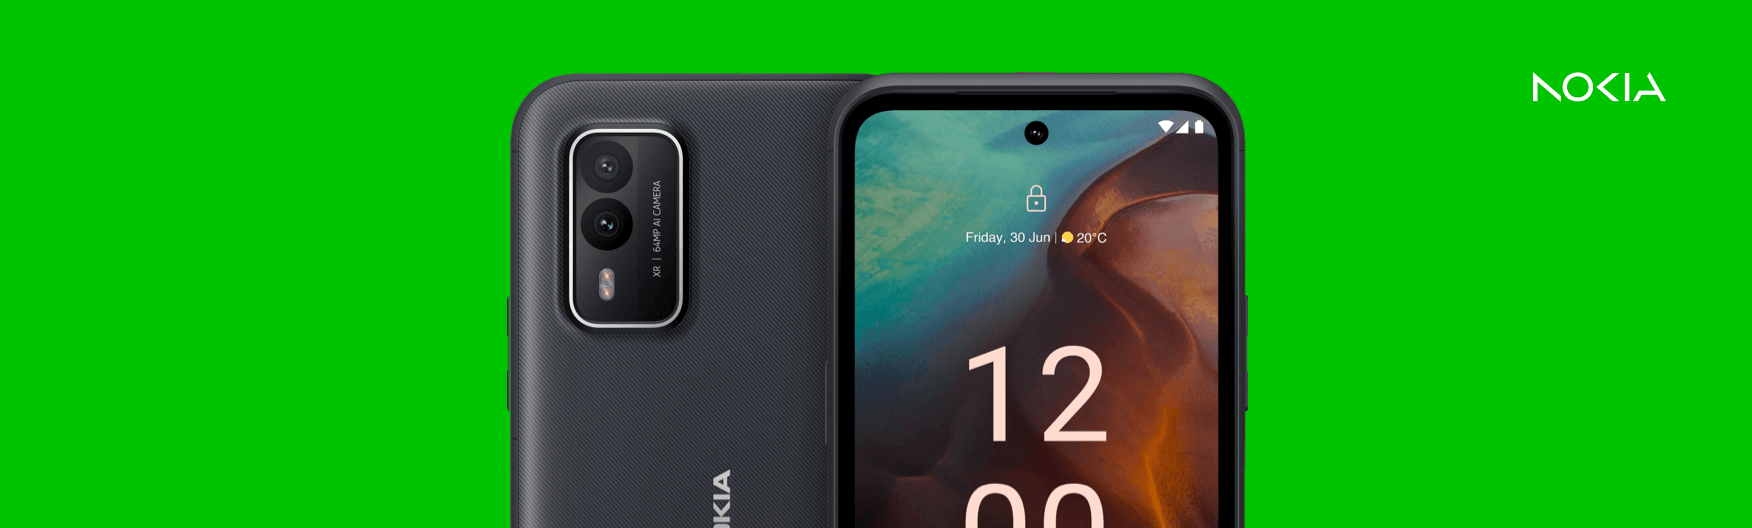 De voor- en achterkant van een Nokia telefoon